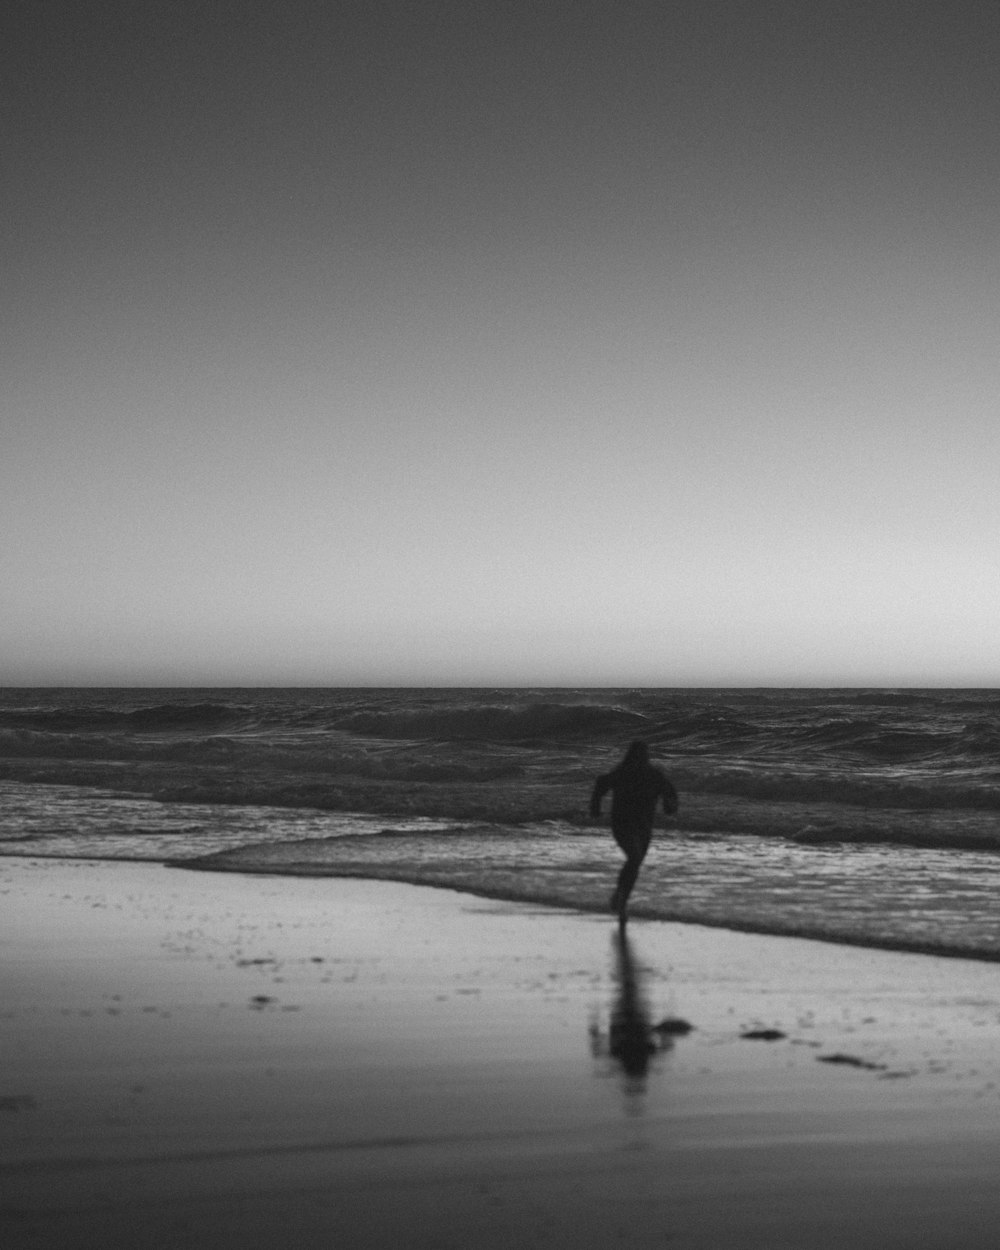 Silueta de persona caminando en la playa durante el día